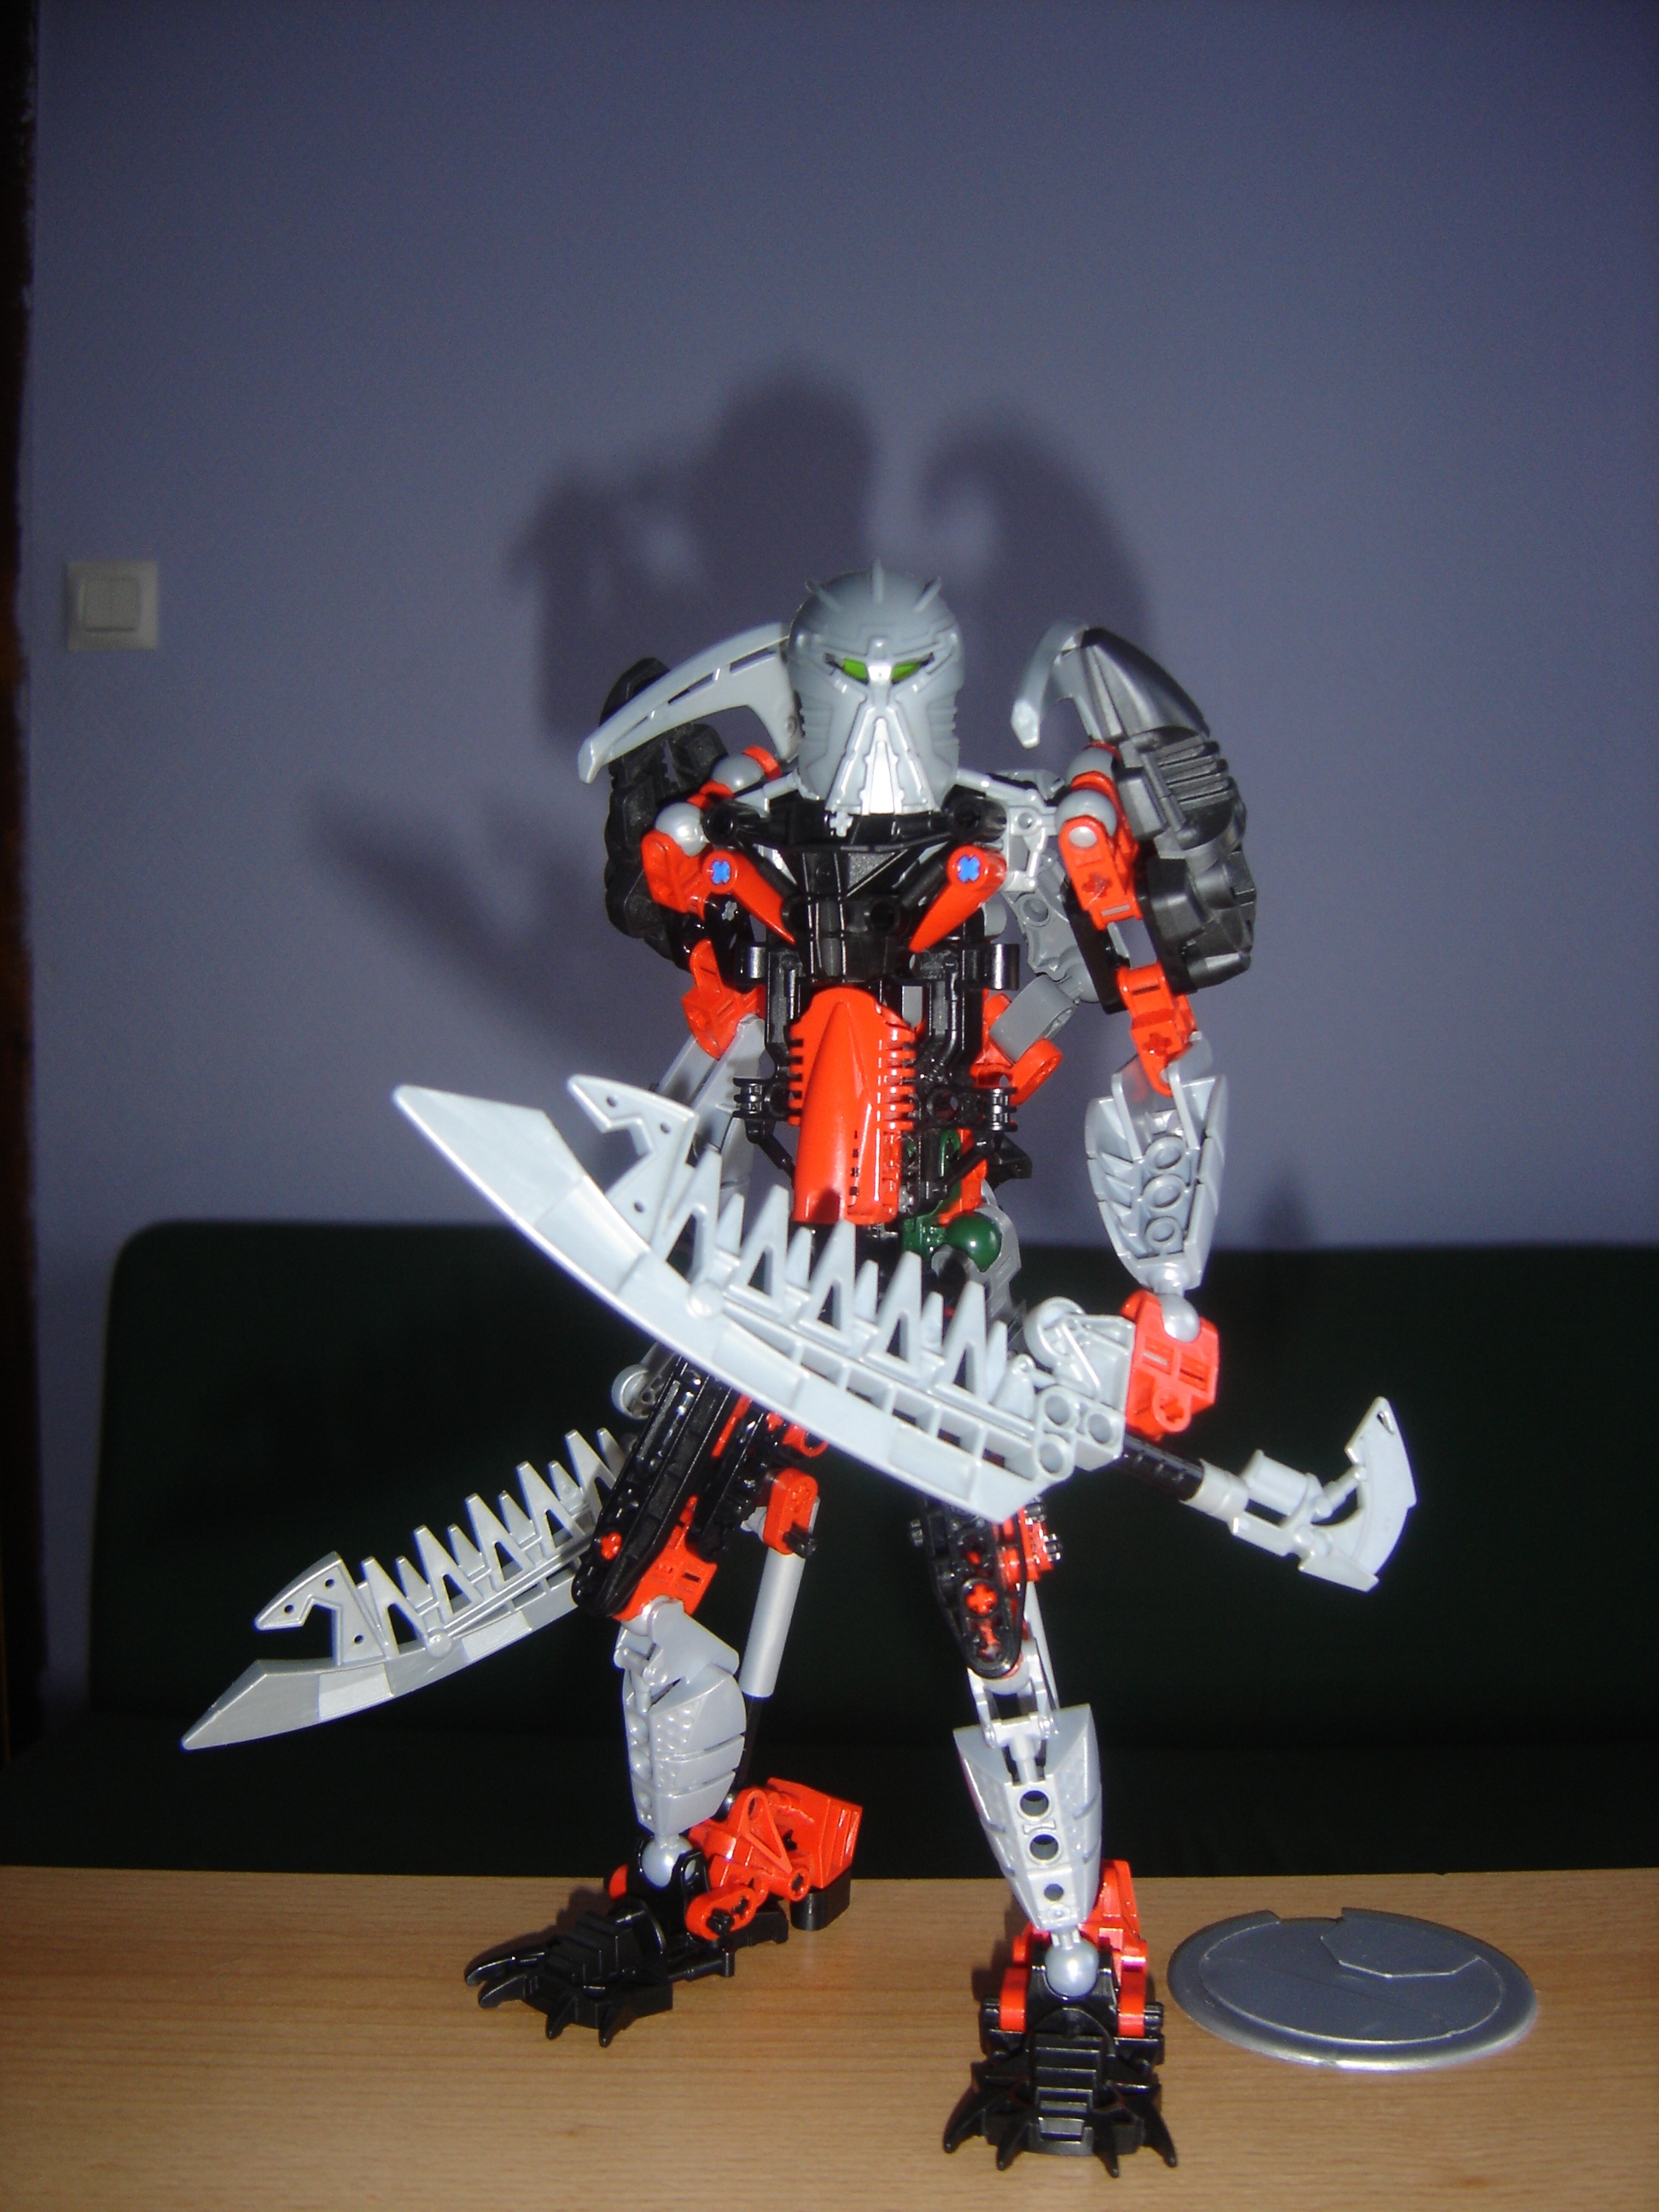 LEGO Bionicle Titan moc